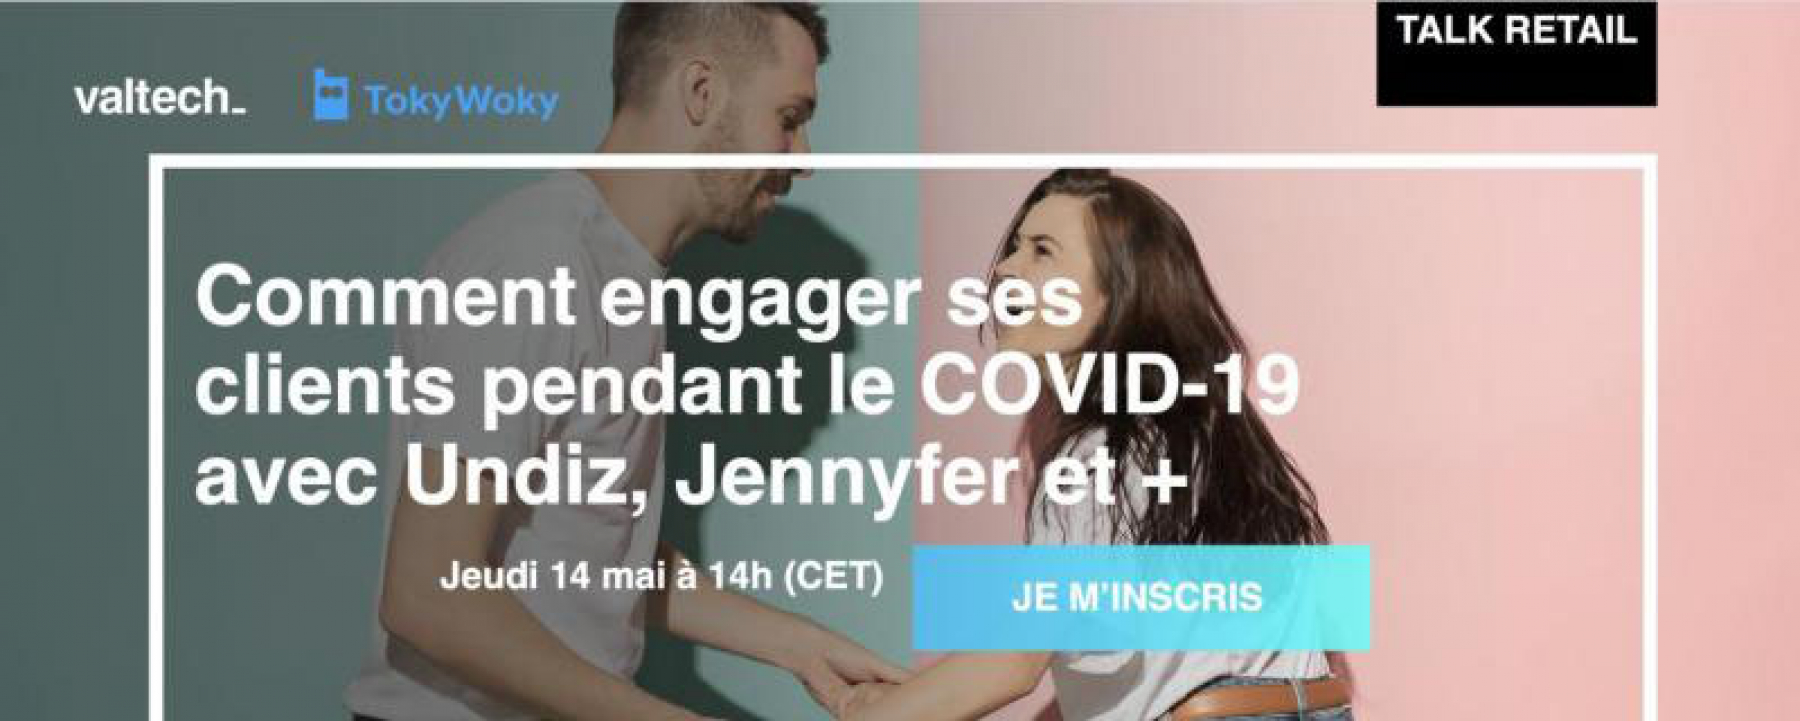 Webinar Talk retail avec Unidz, Jennyfer et plus : comment engager ses clients pendant le COVID-19 ?, organisé par l'agence Valtech, le 14 mai 2020